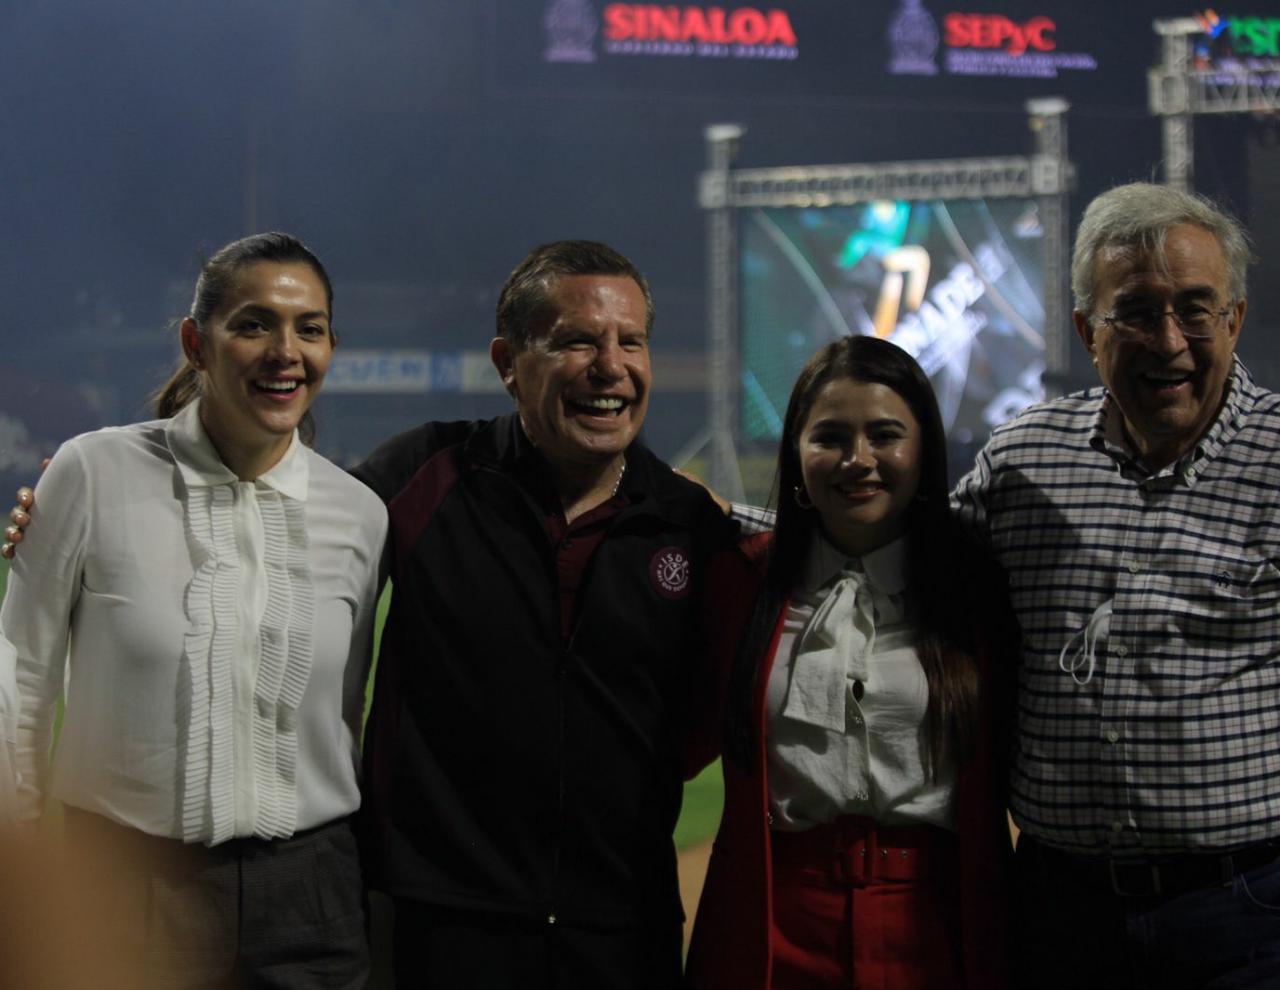 $!Con baile, carnaval y pirotecnia inauguran Juegos Nacionales Conade en Sinaloa